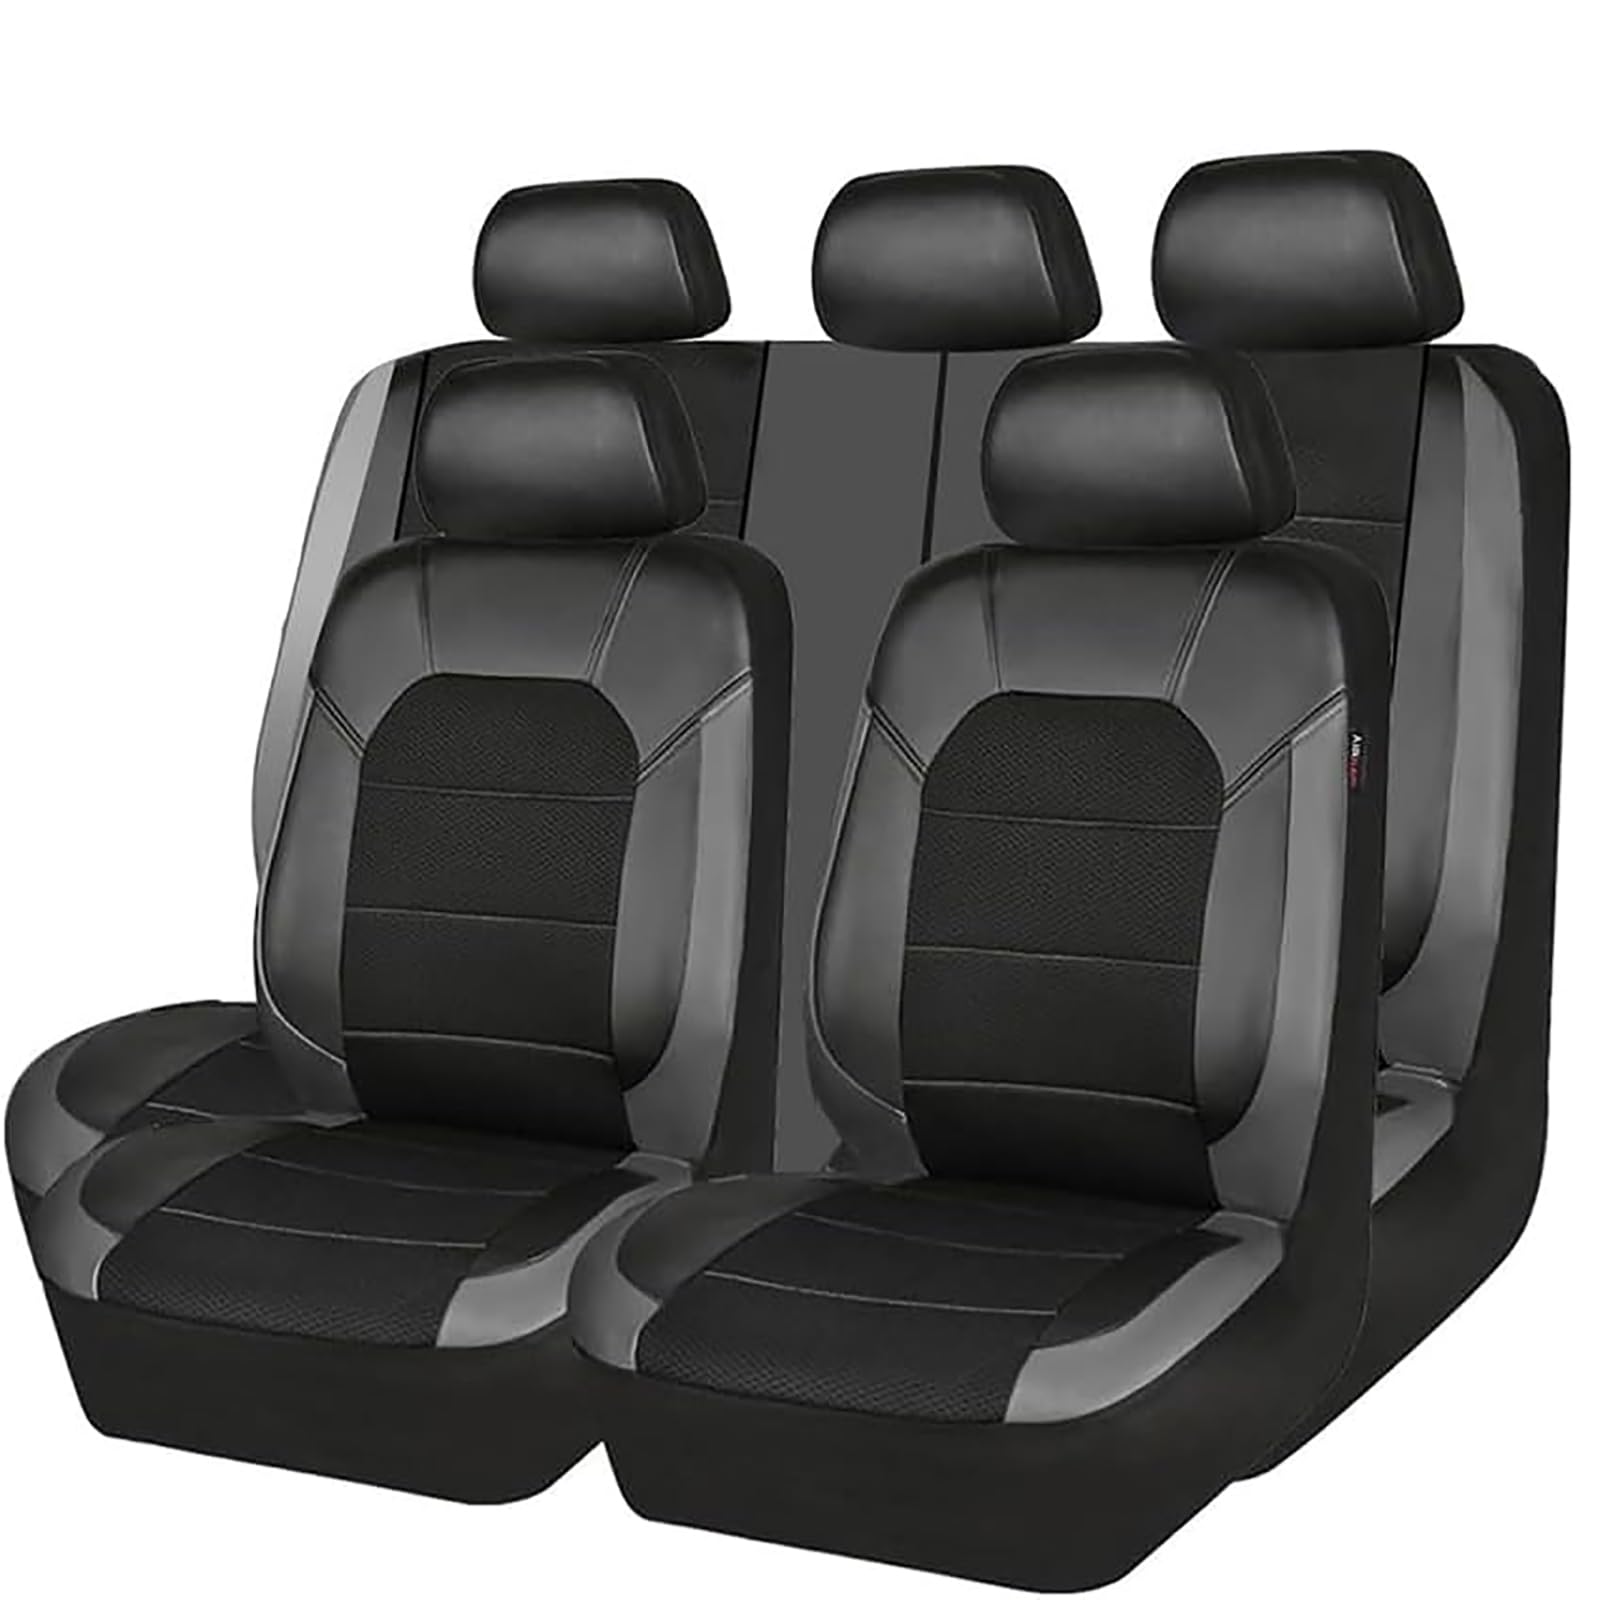 YZECEBNF Auto Sitzbezüge Set Für BMW X1 X2 X3 X4 X5 X6 X7, Universal Autositzbezüge Vorne RüCken Sitzschutz Sitzkissen Waschbarer Anti Rutsch Innenraum Zubehör,B/Grey von YZECEBNF